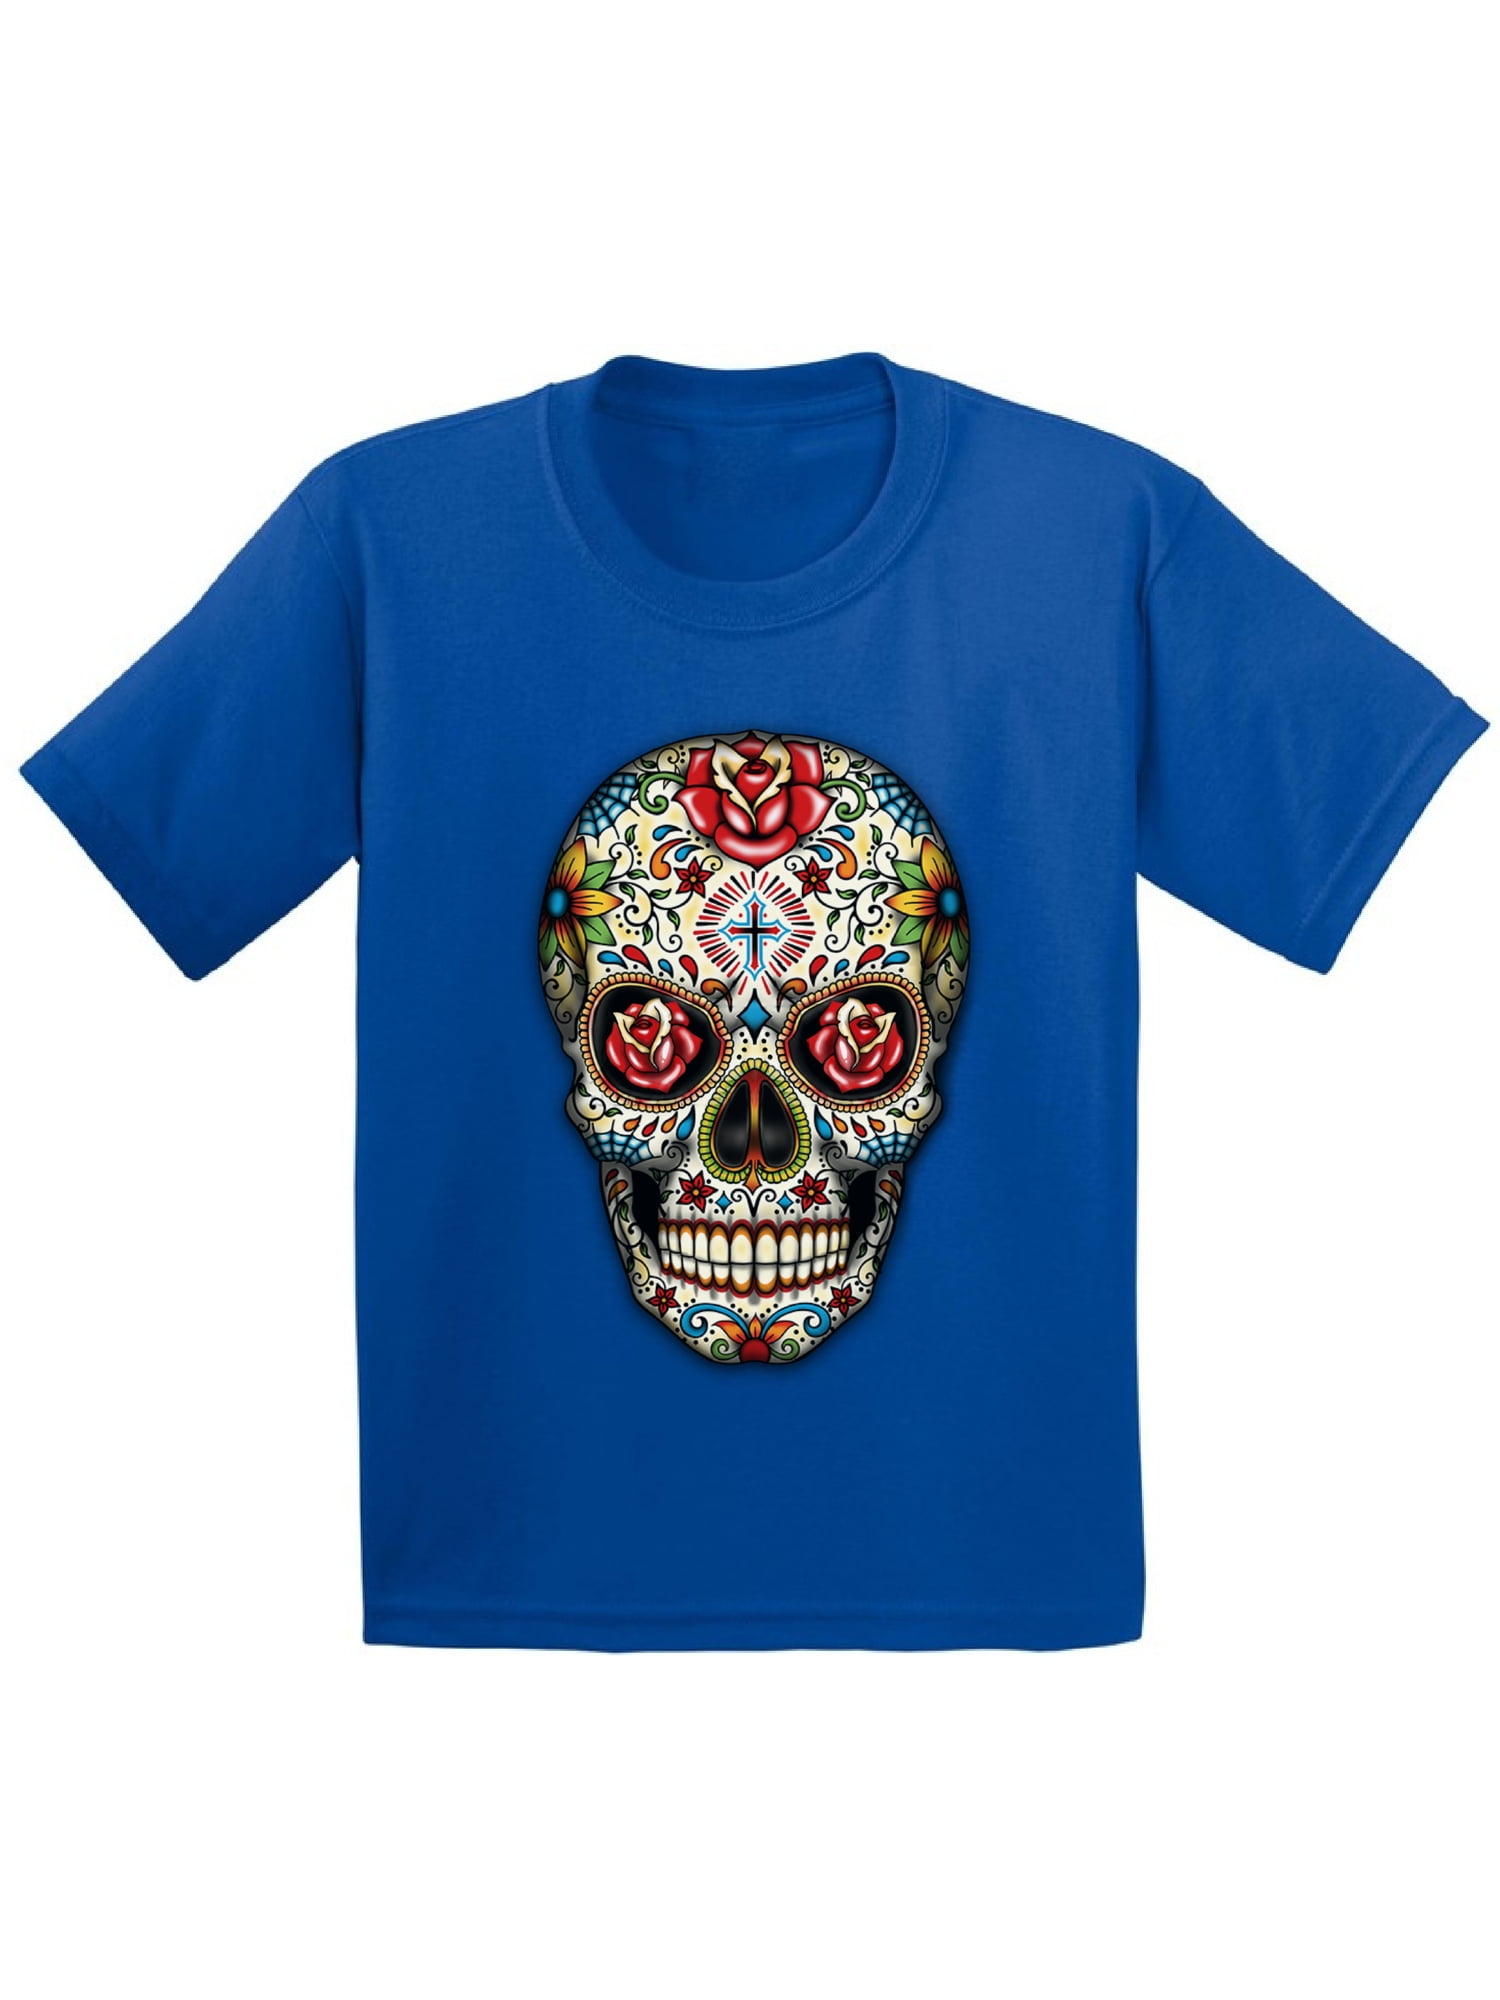 NEW Juniors Long Sleeve T-shirt Sugar Skull Halloween Jerry Leigh 100% Cotton